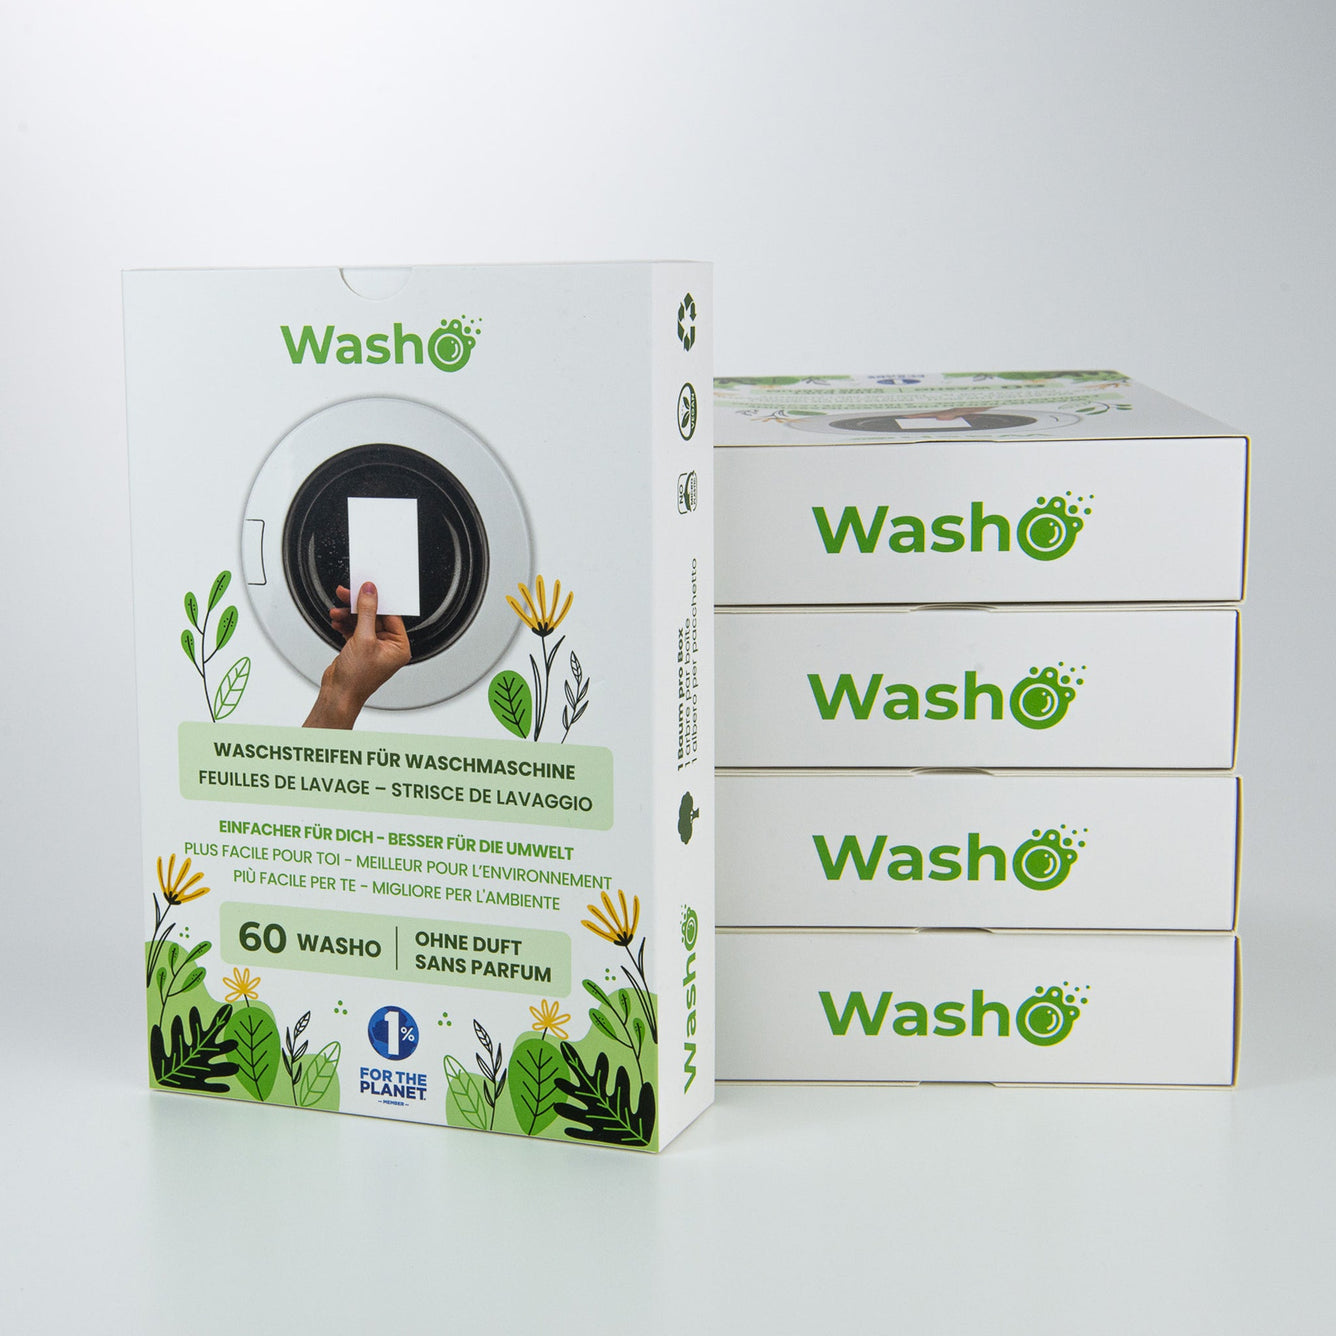 5 Boxen mit total 300 Washo-Waschstreifen ohne Duft - washo.ch